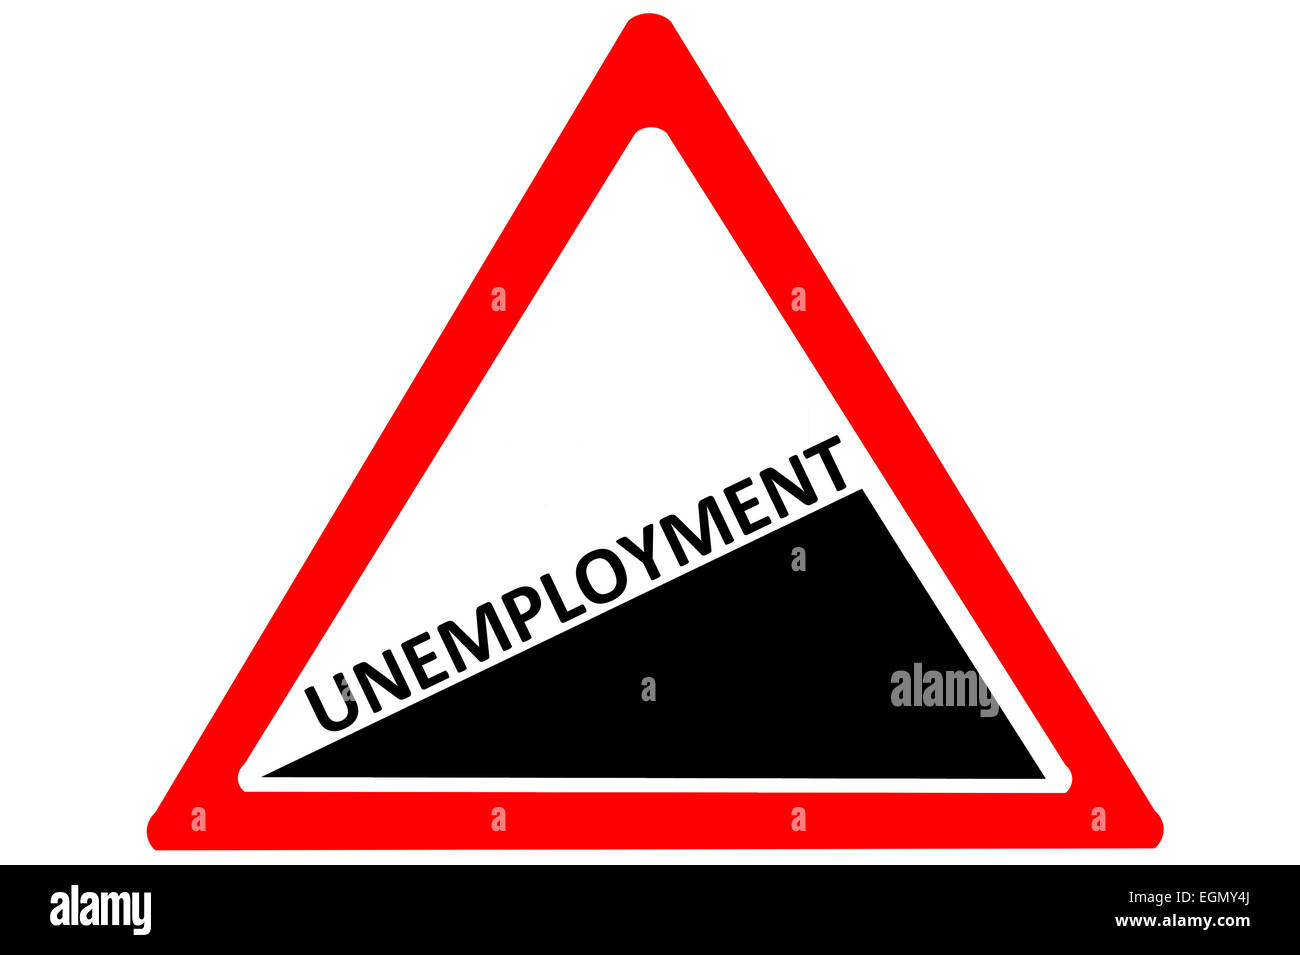 L'augmentation de chômage attention panneau routier isolé sur fond blanc Banque D'Images